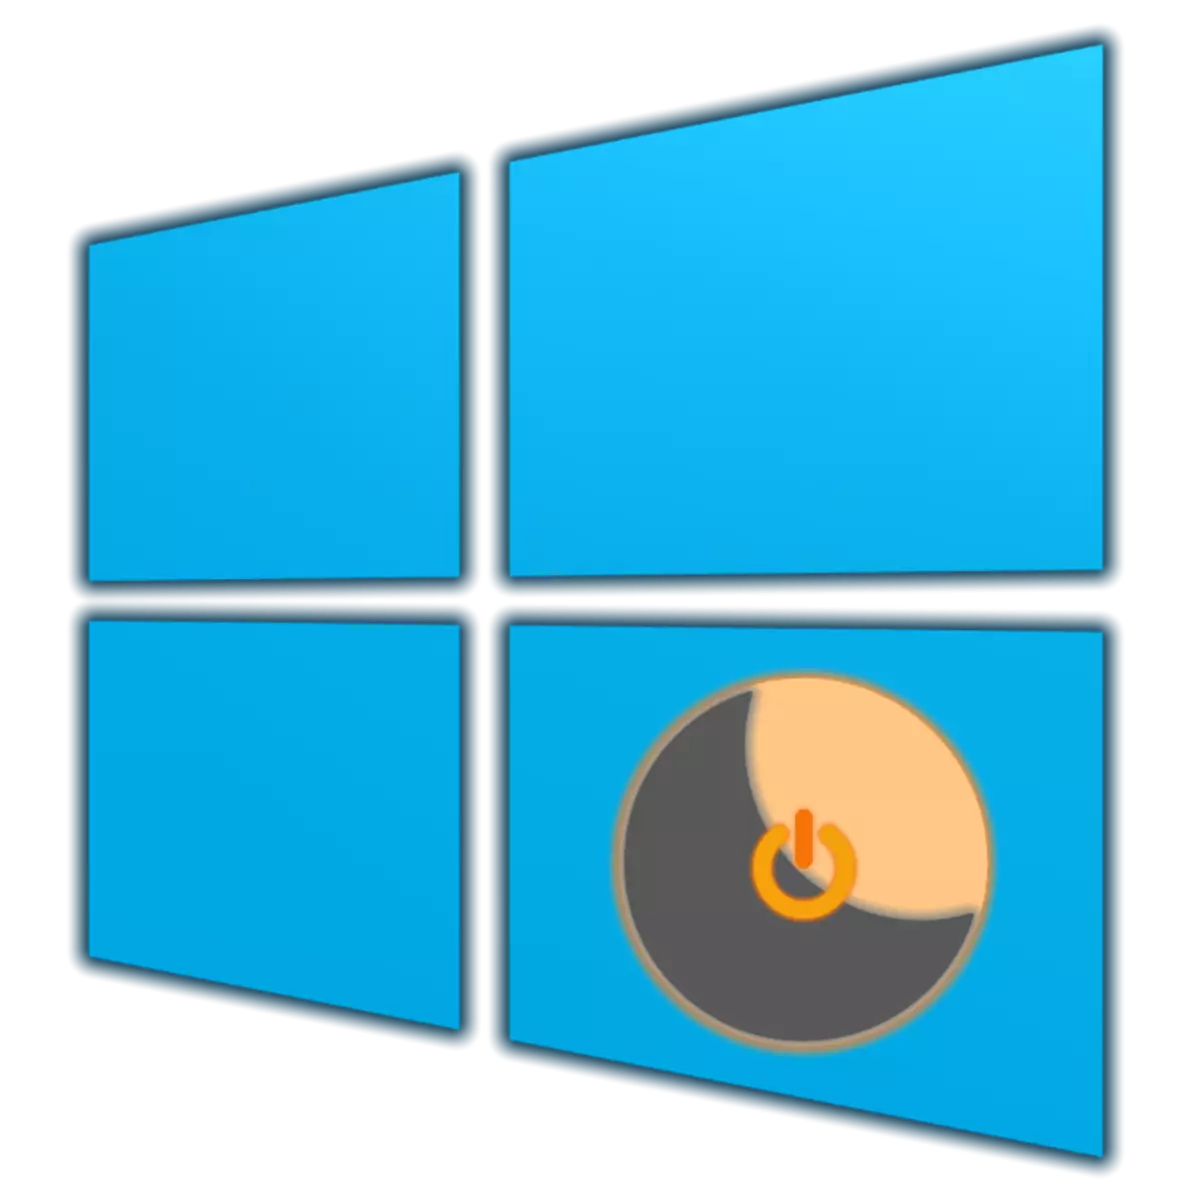 ວິທີການເປີດໃຊ້ hibernation ໃນ Windows 10